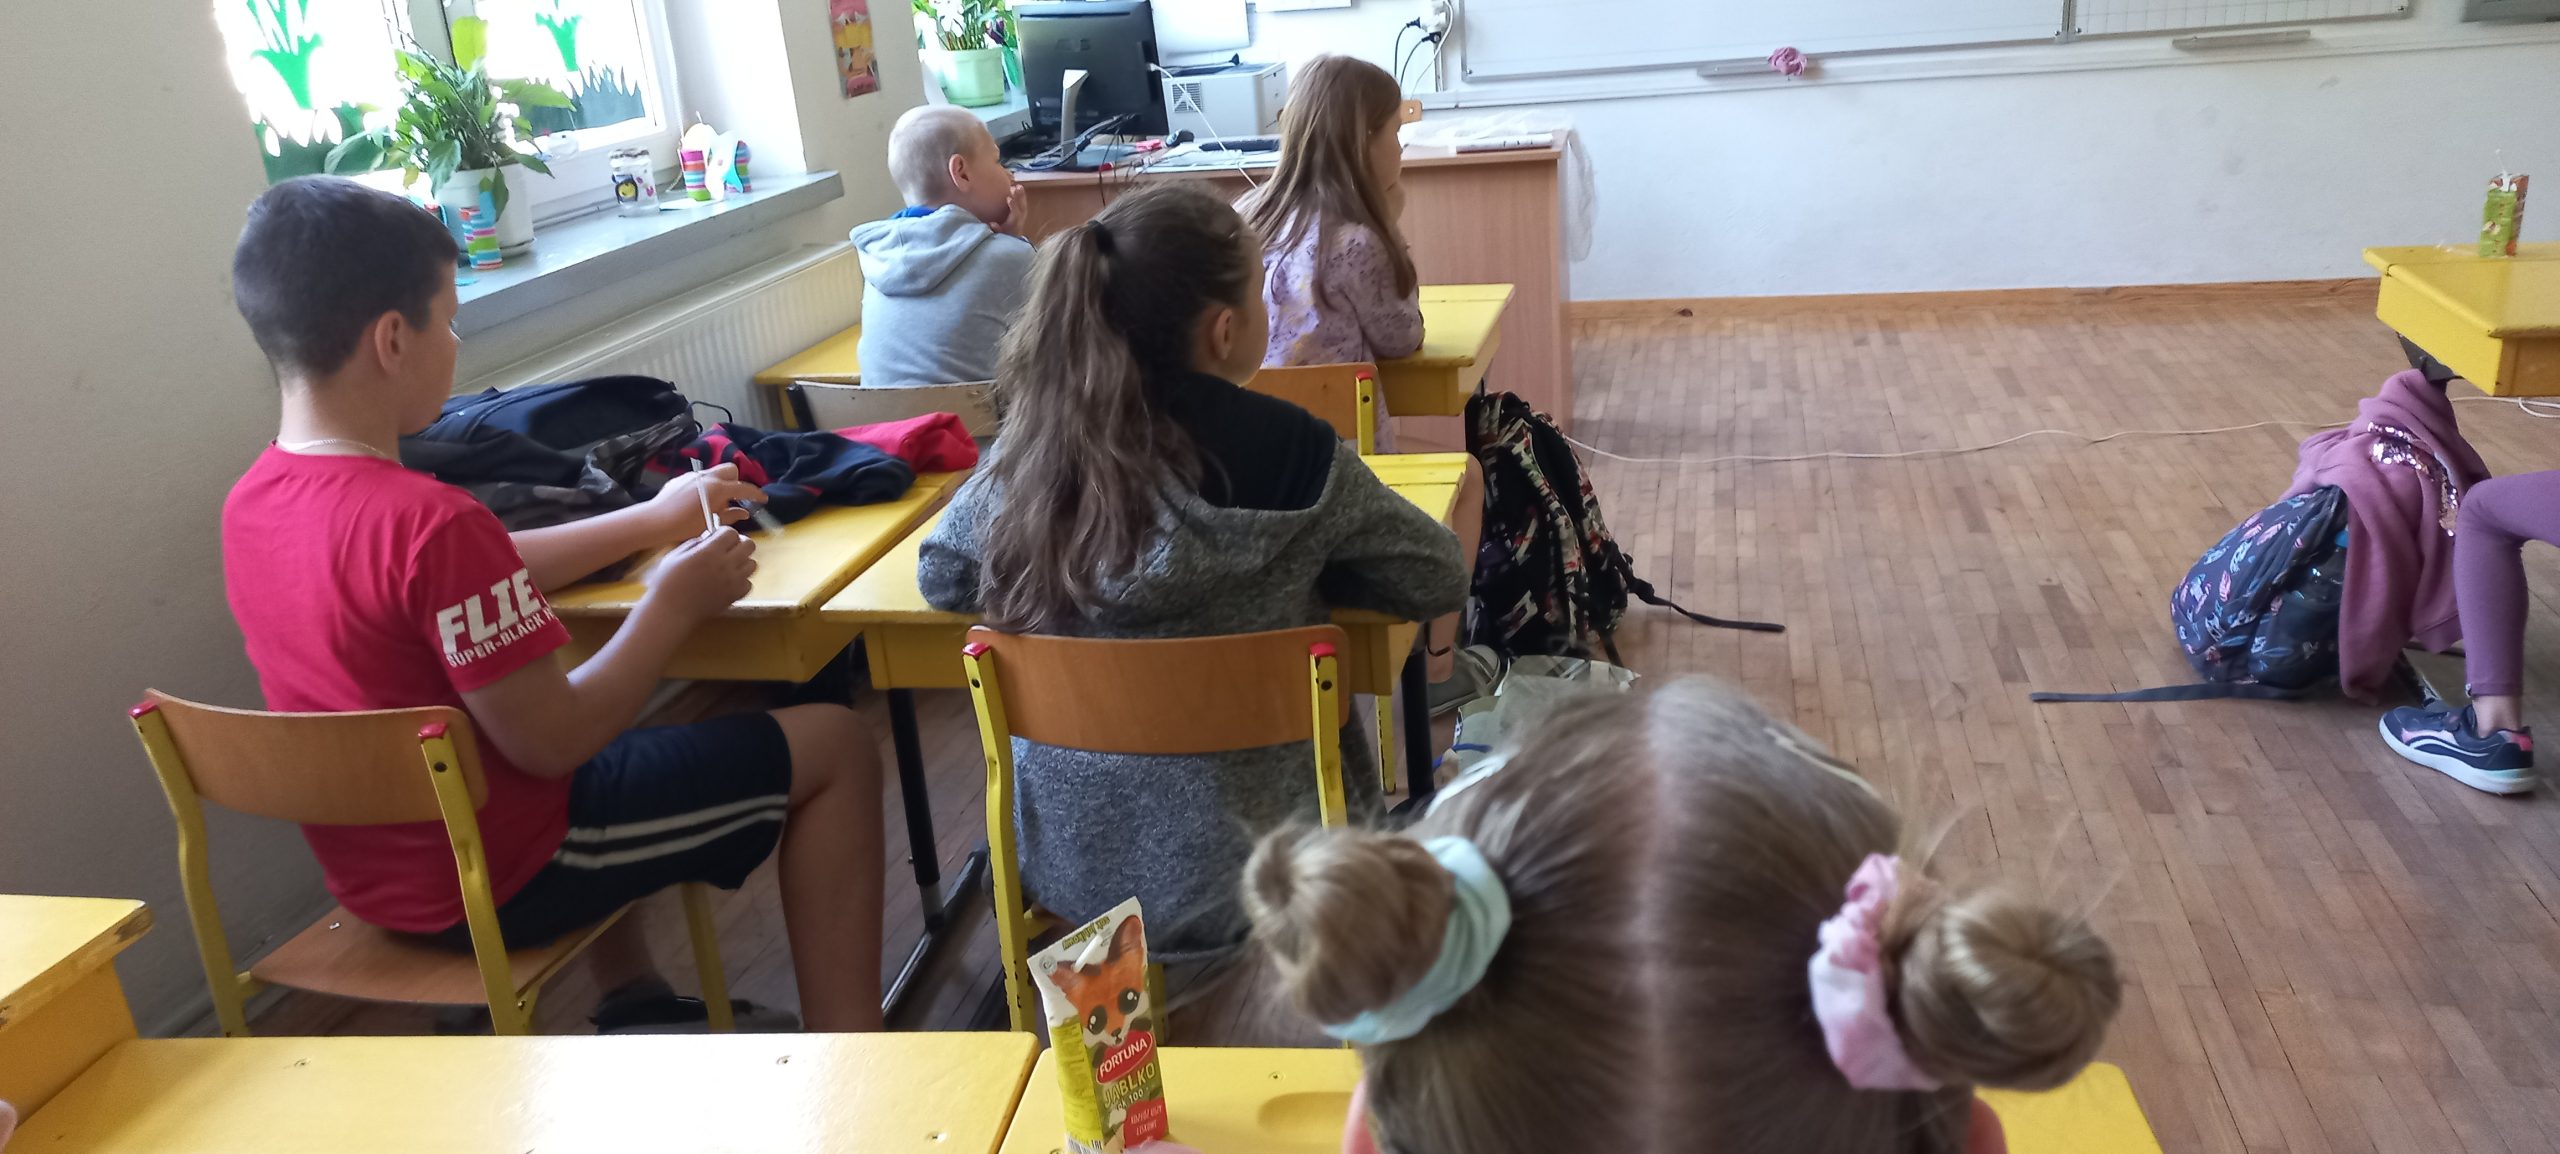 dzieci w klasie siedzą w ławkach